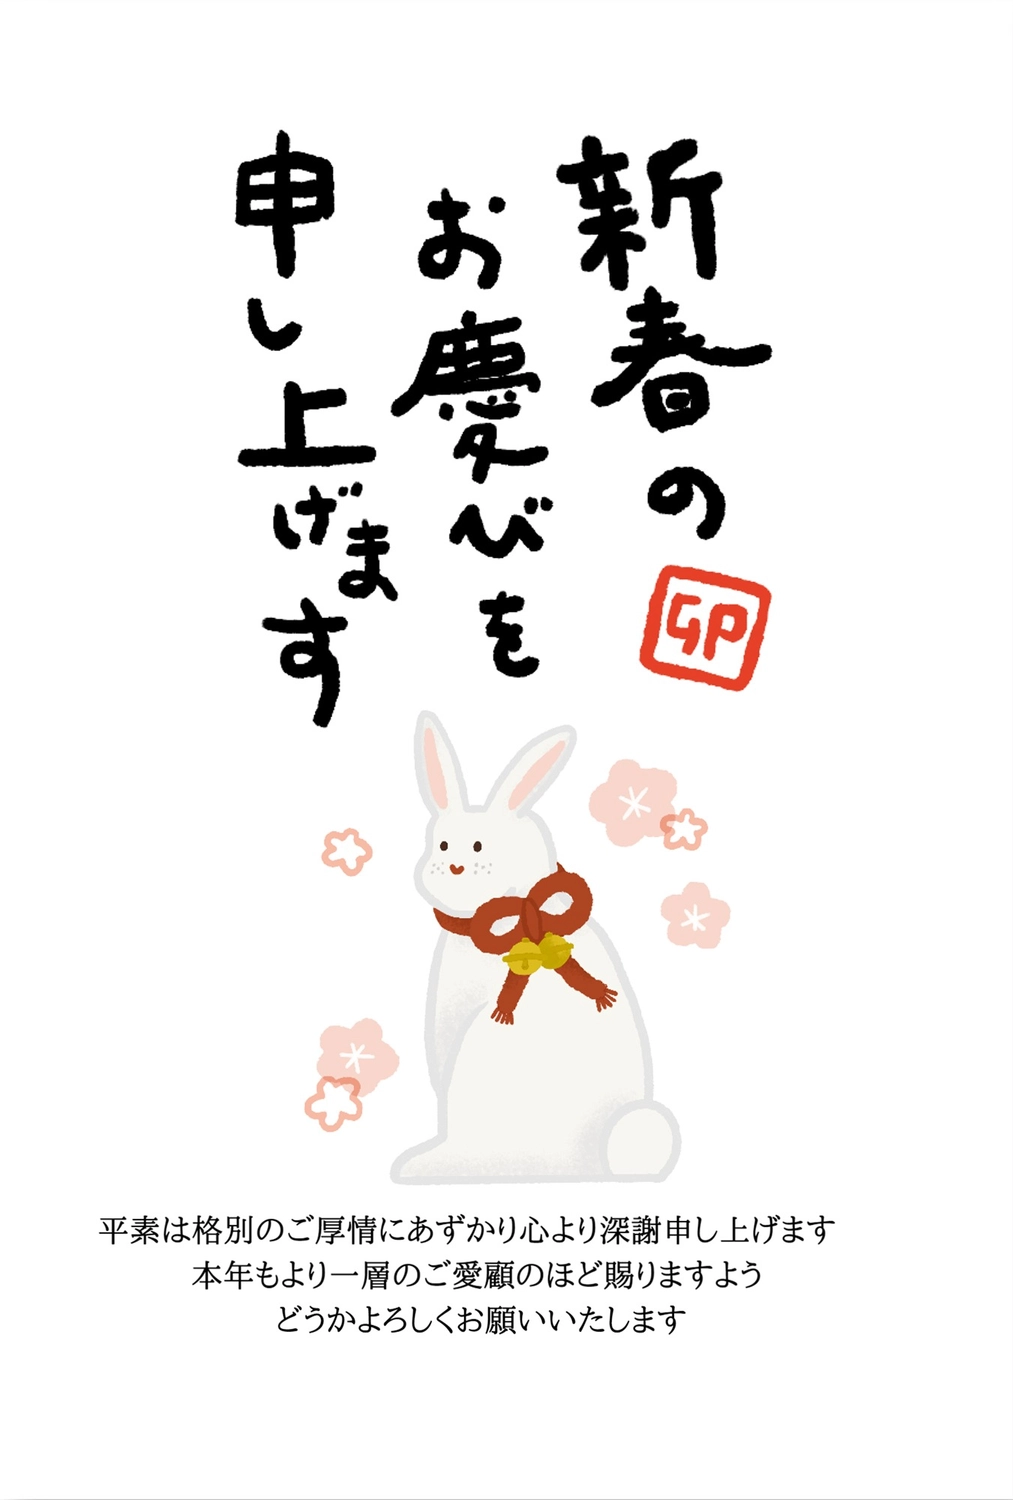 年賀状　振り向くうさぎ, poorly written character, Happy New Year!, look back, New Year Card template